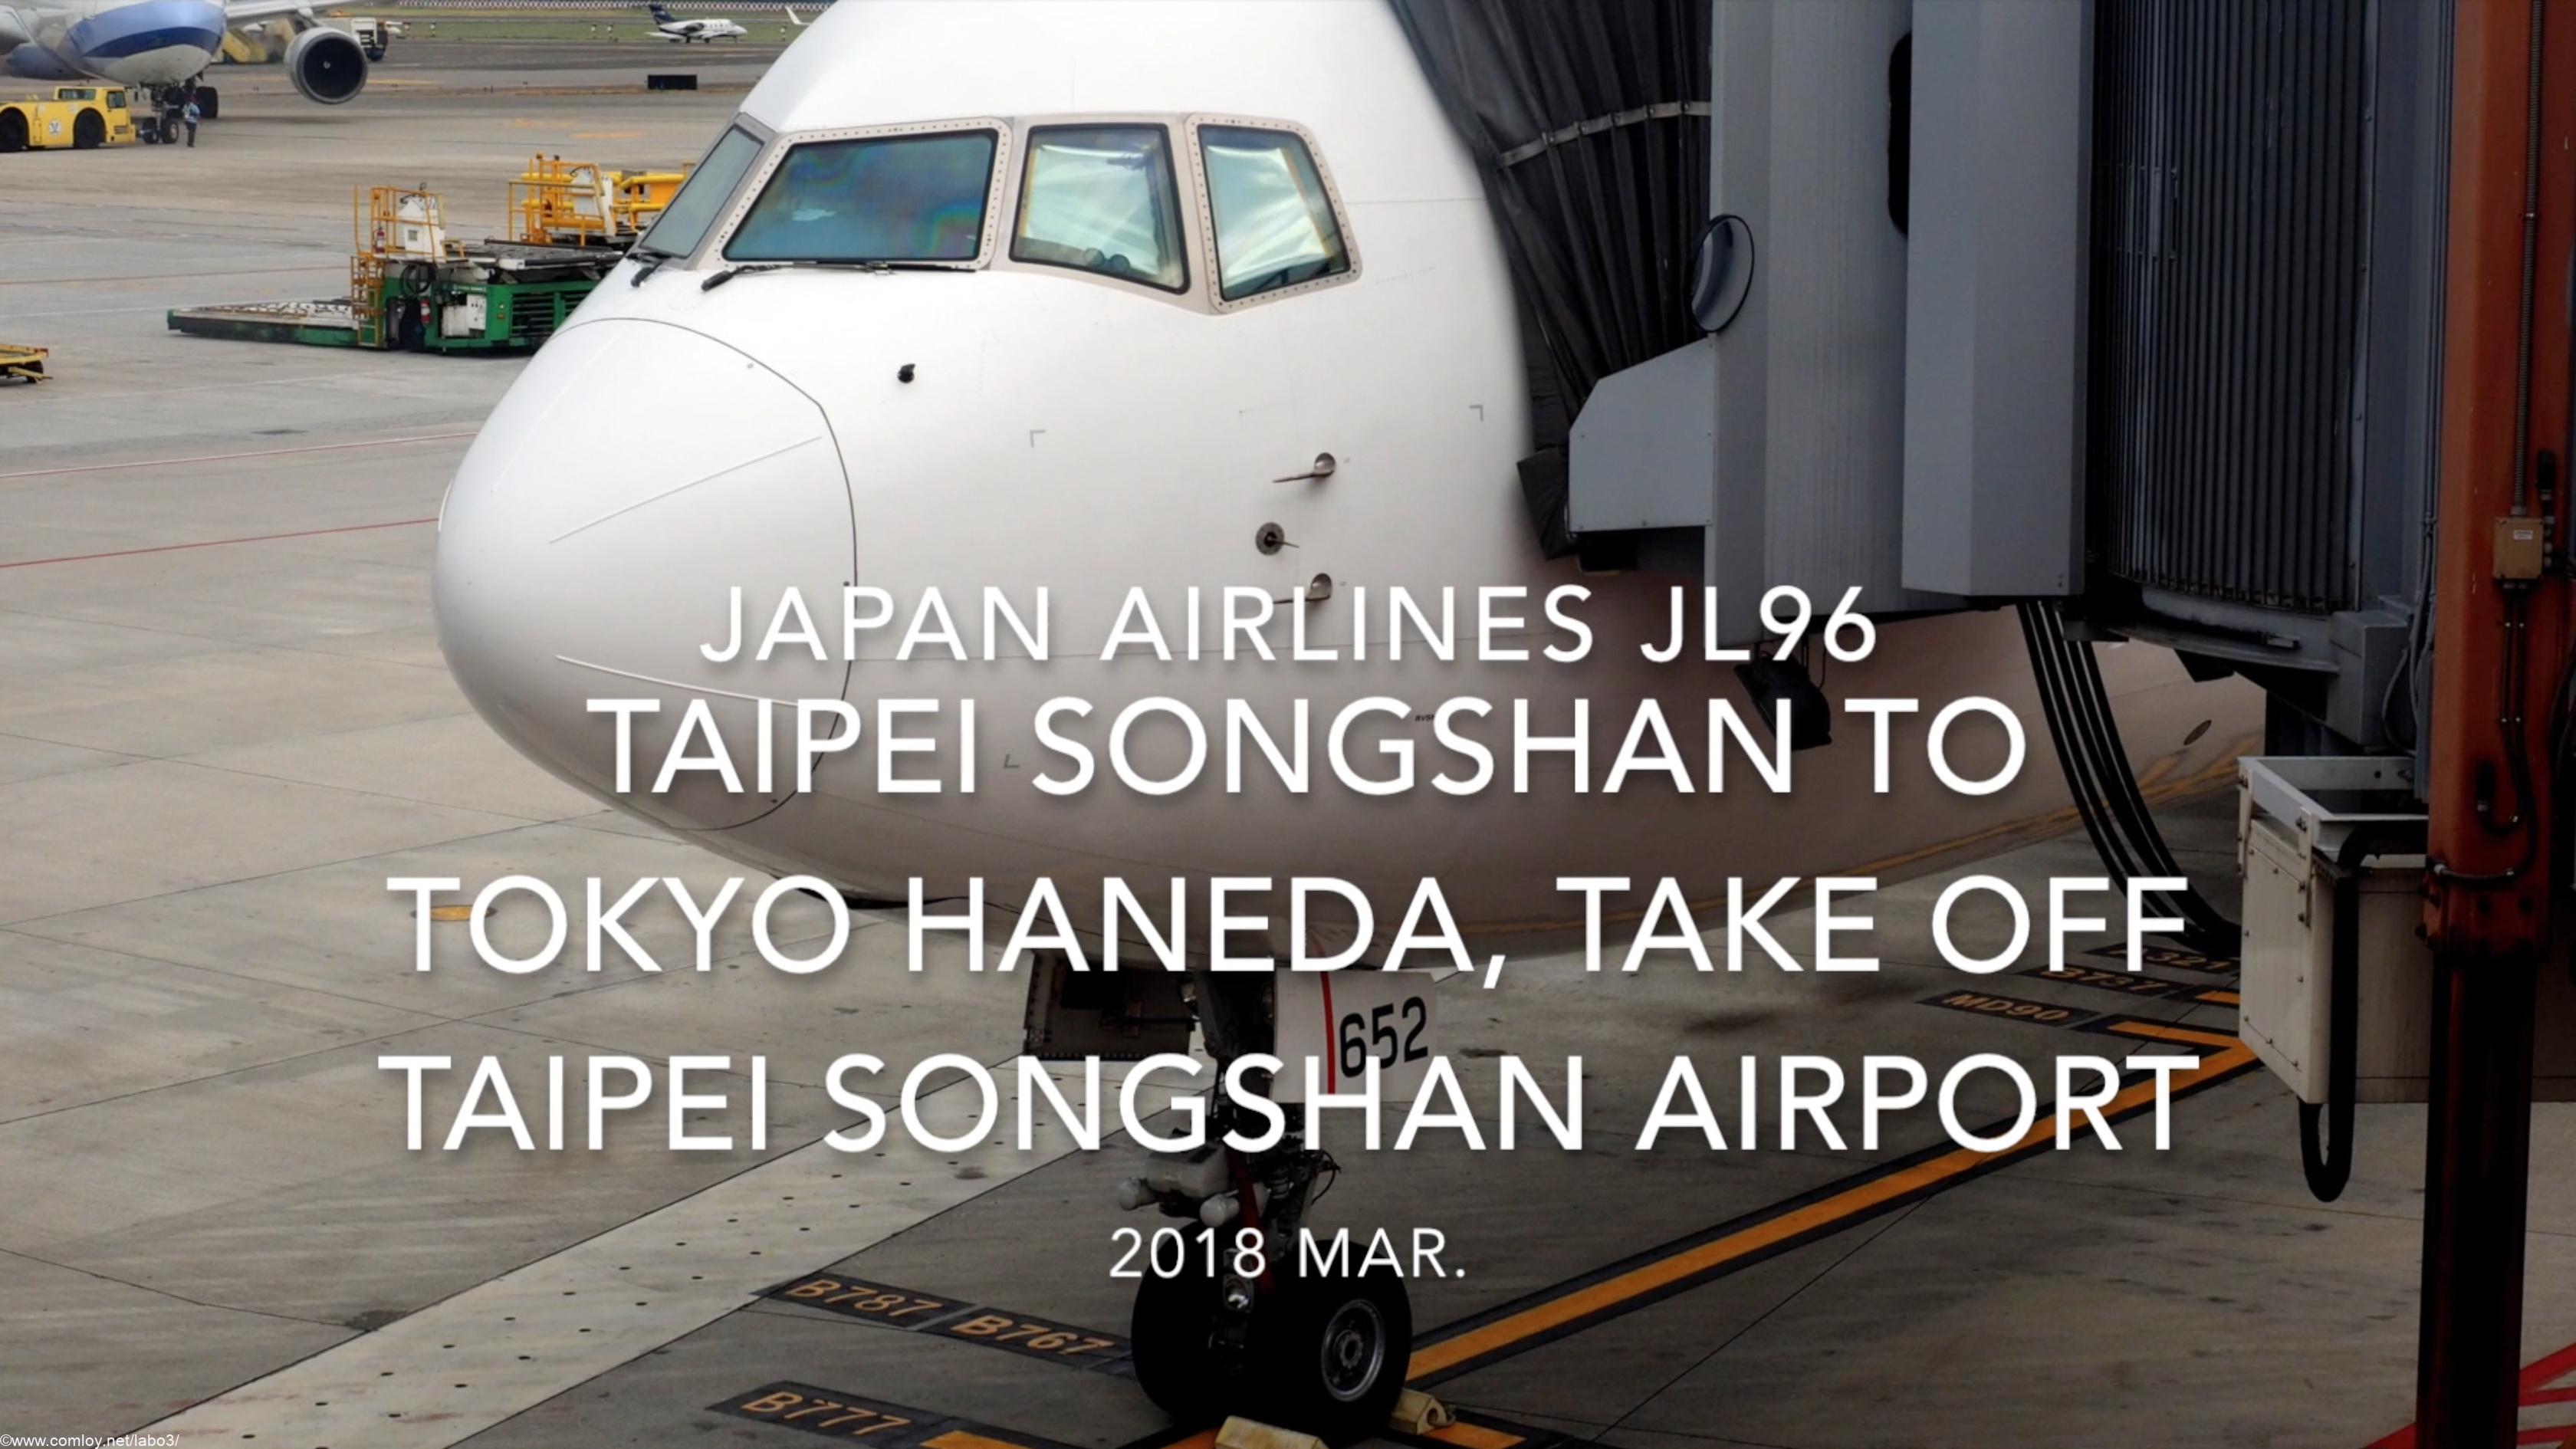 【機内から離着陸映像】2018 Mar Japan Airlines JL96 Taipei Songshan to TOKYO HANEDA, Take off Taipei Songshan airport